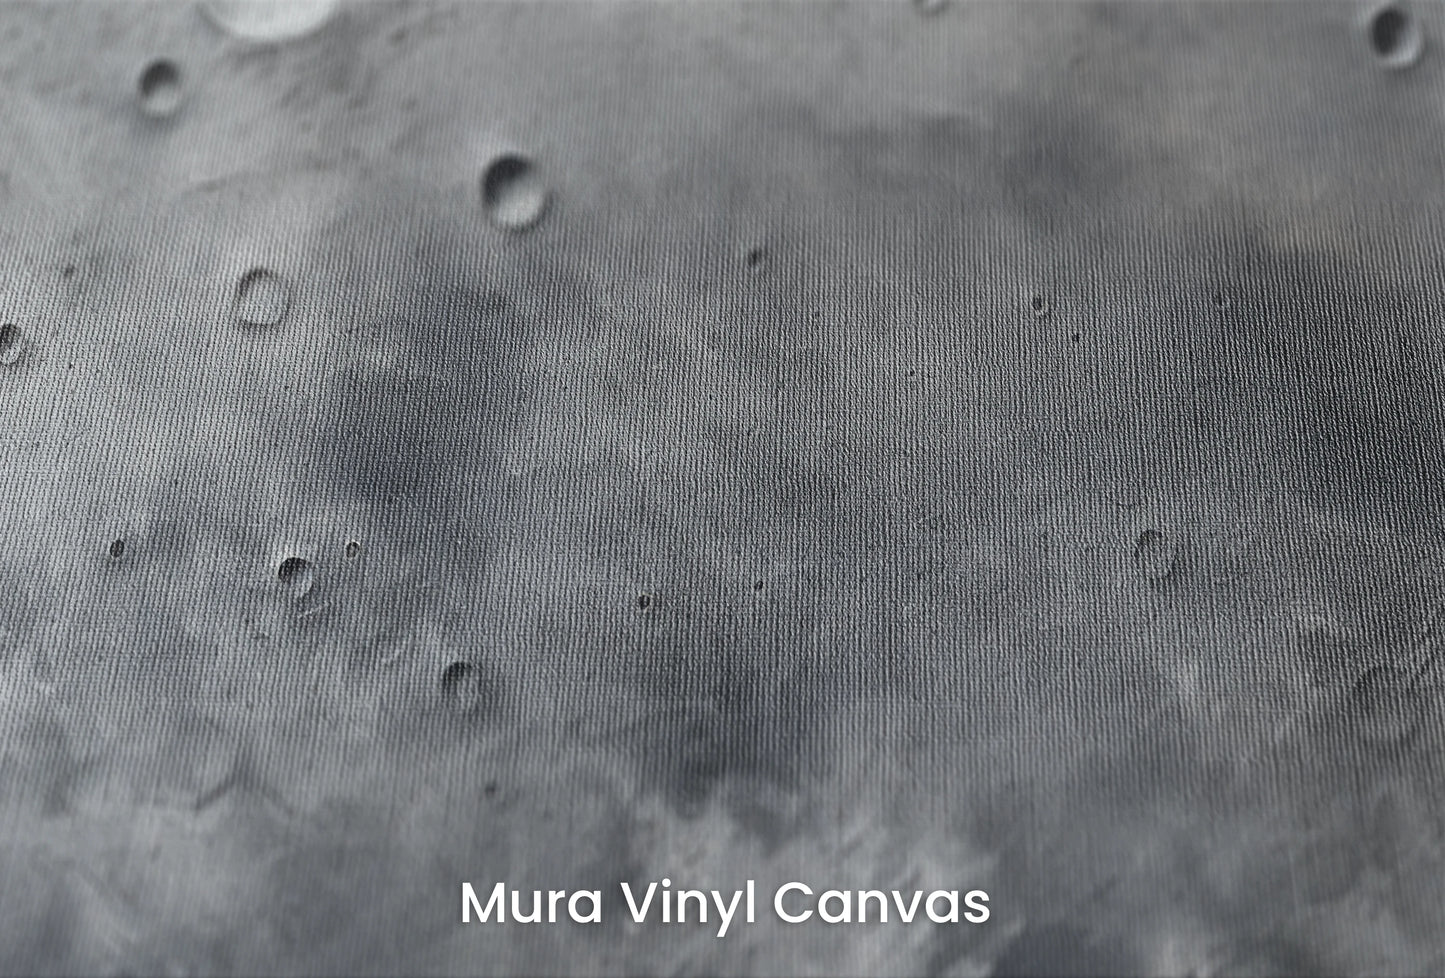 Zbliżenie na artystyczną fototapetę o nazwie Pluto's Mystery na podłożu Mura Vinyl Canvas - faktura naturalnego płótna.